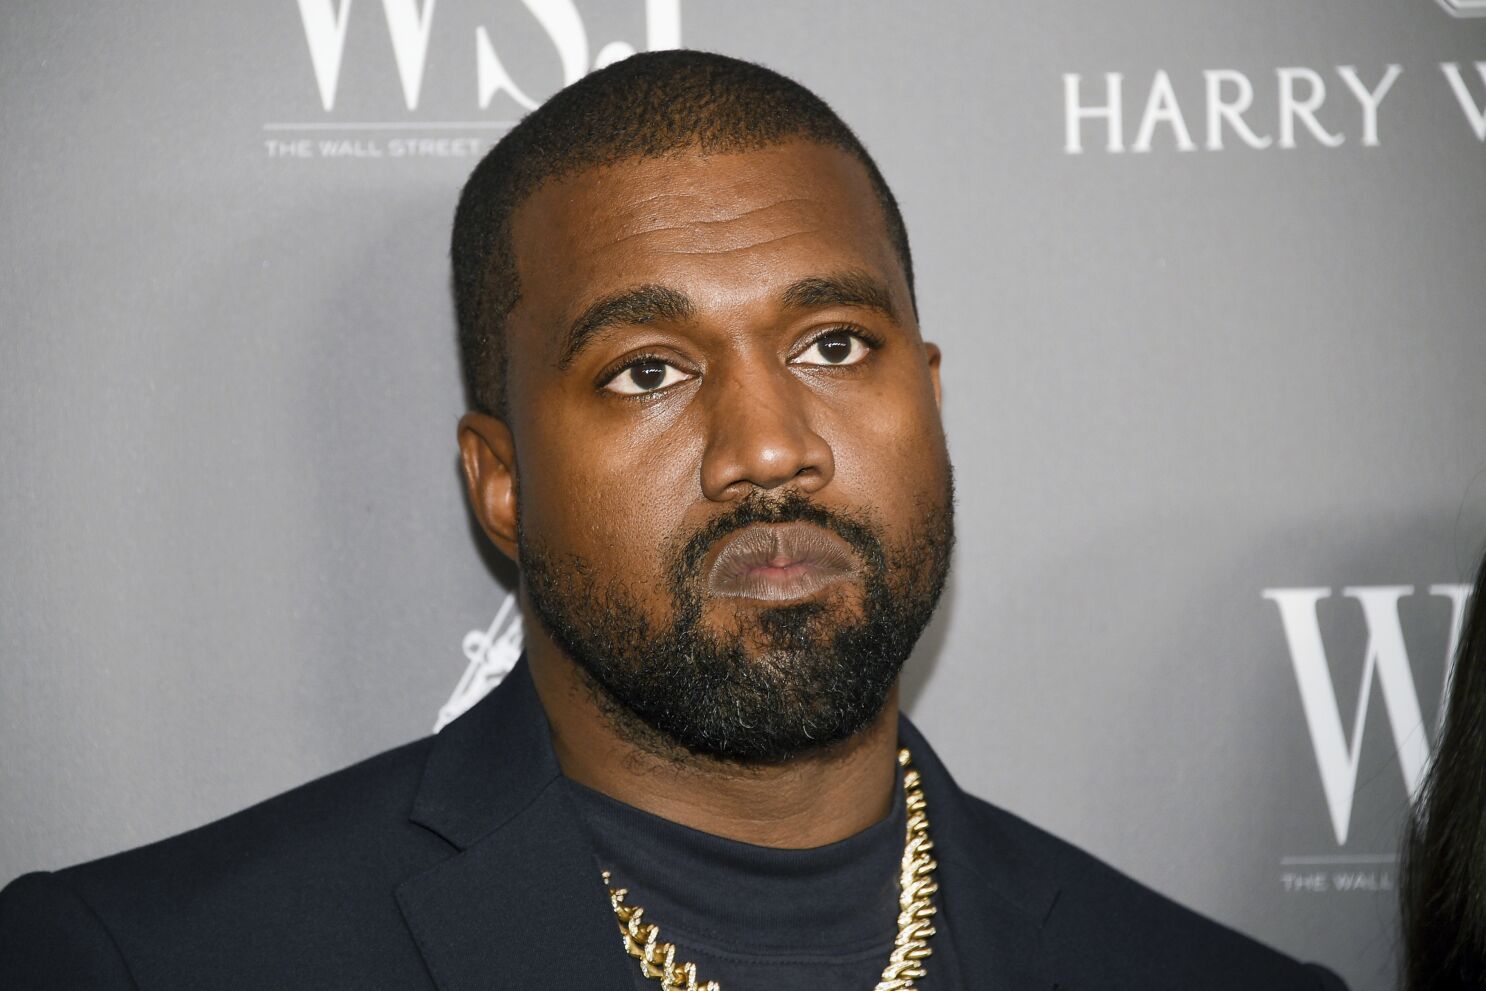 ¡Otra vez! Musk cancela la cuenta de Twitter de Kanye West por incitar a la violencia 